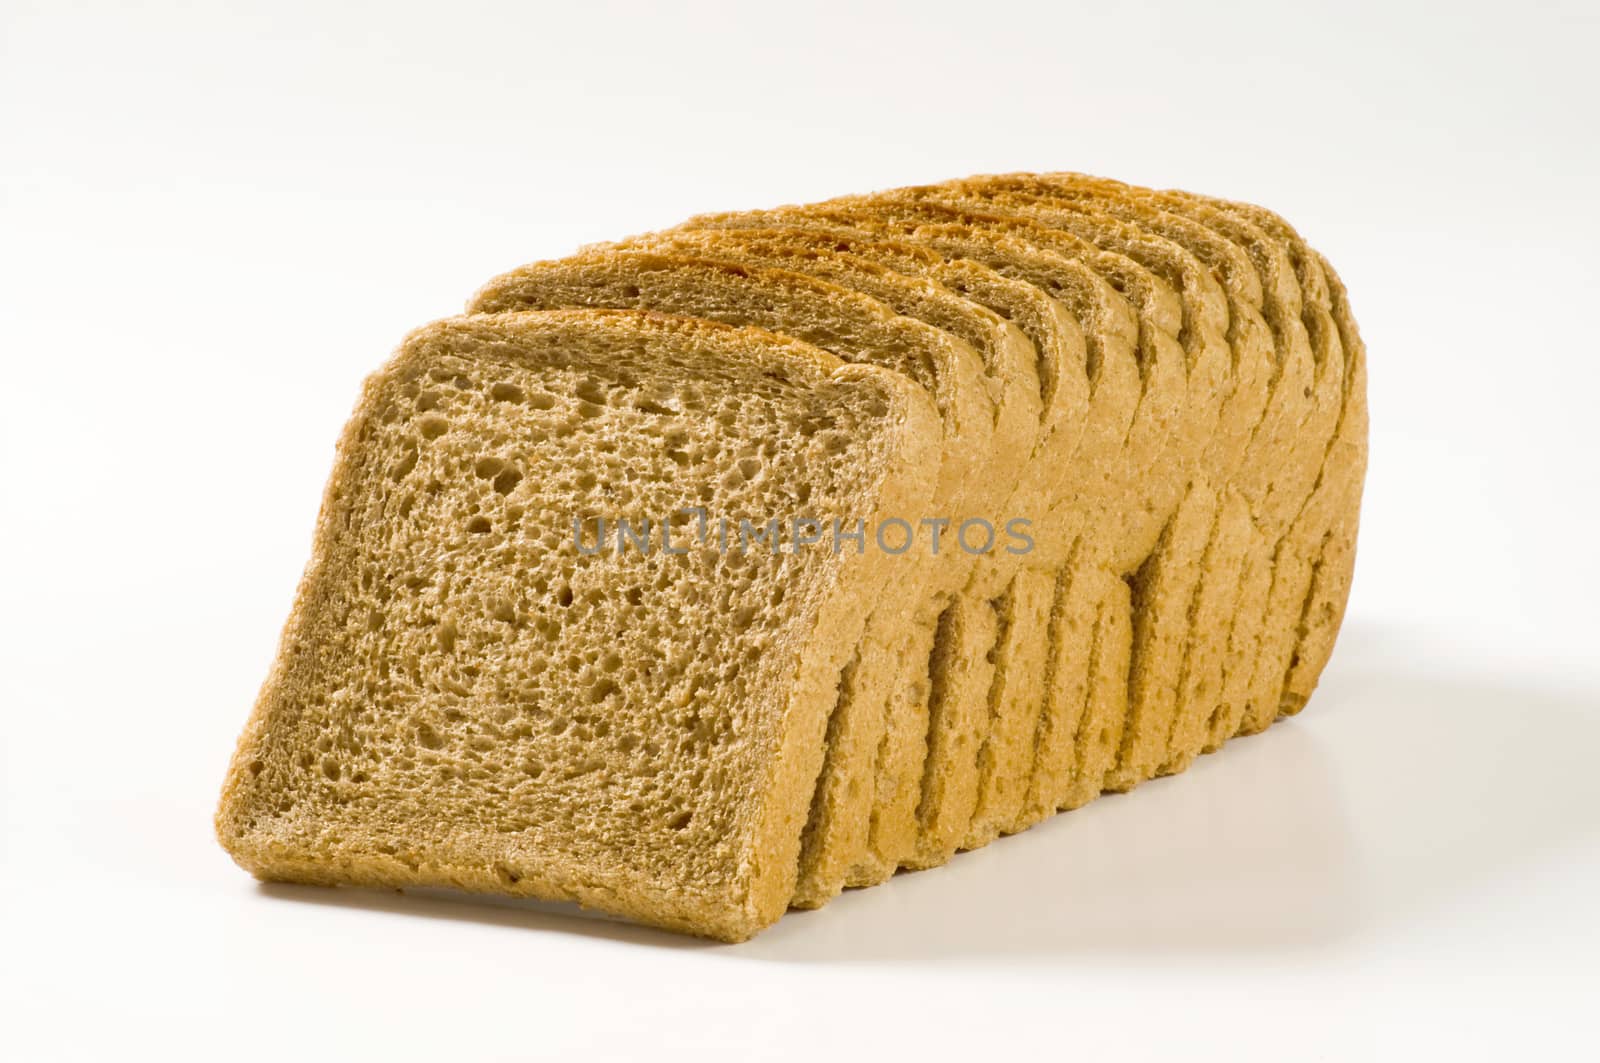 Brown sandwich bread by Digifoodstock